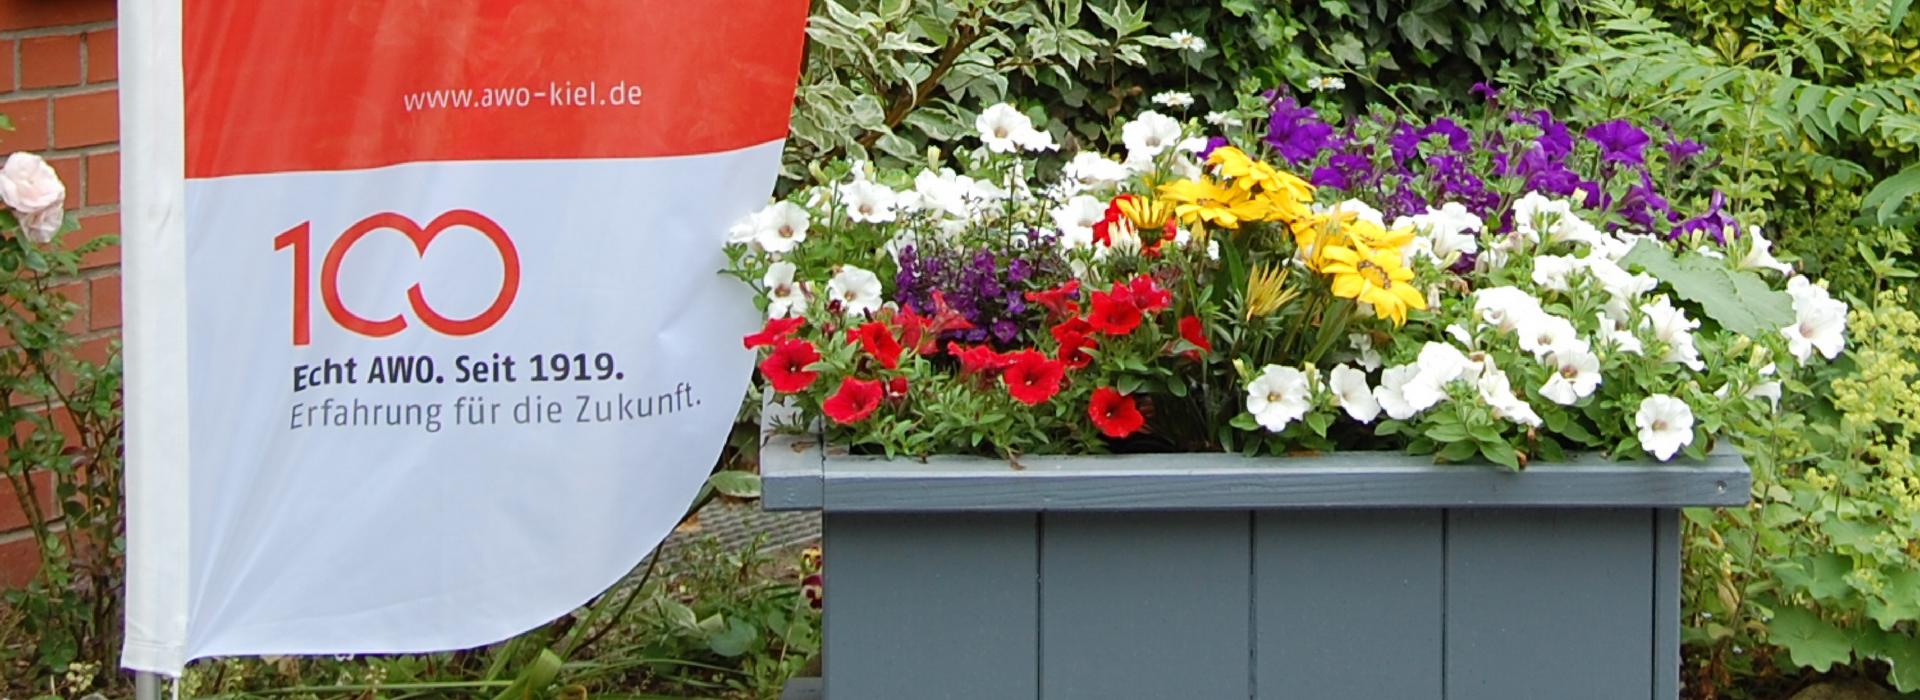 AWO Kiel: Das Bild zeigt eine AWO-Fahne mit Blumen.